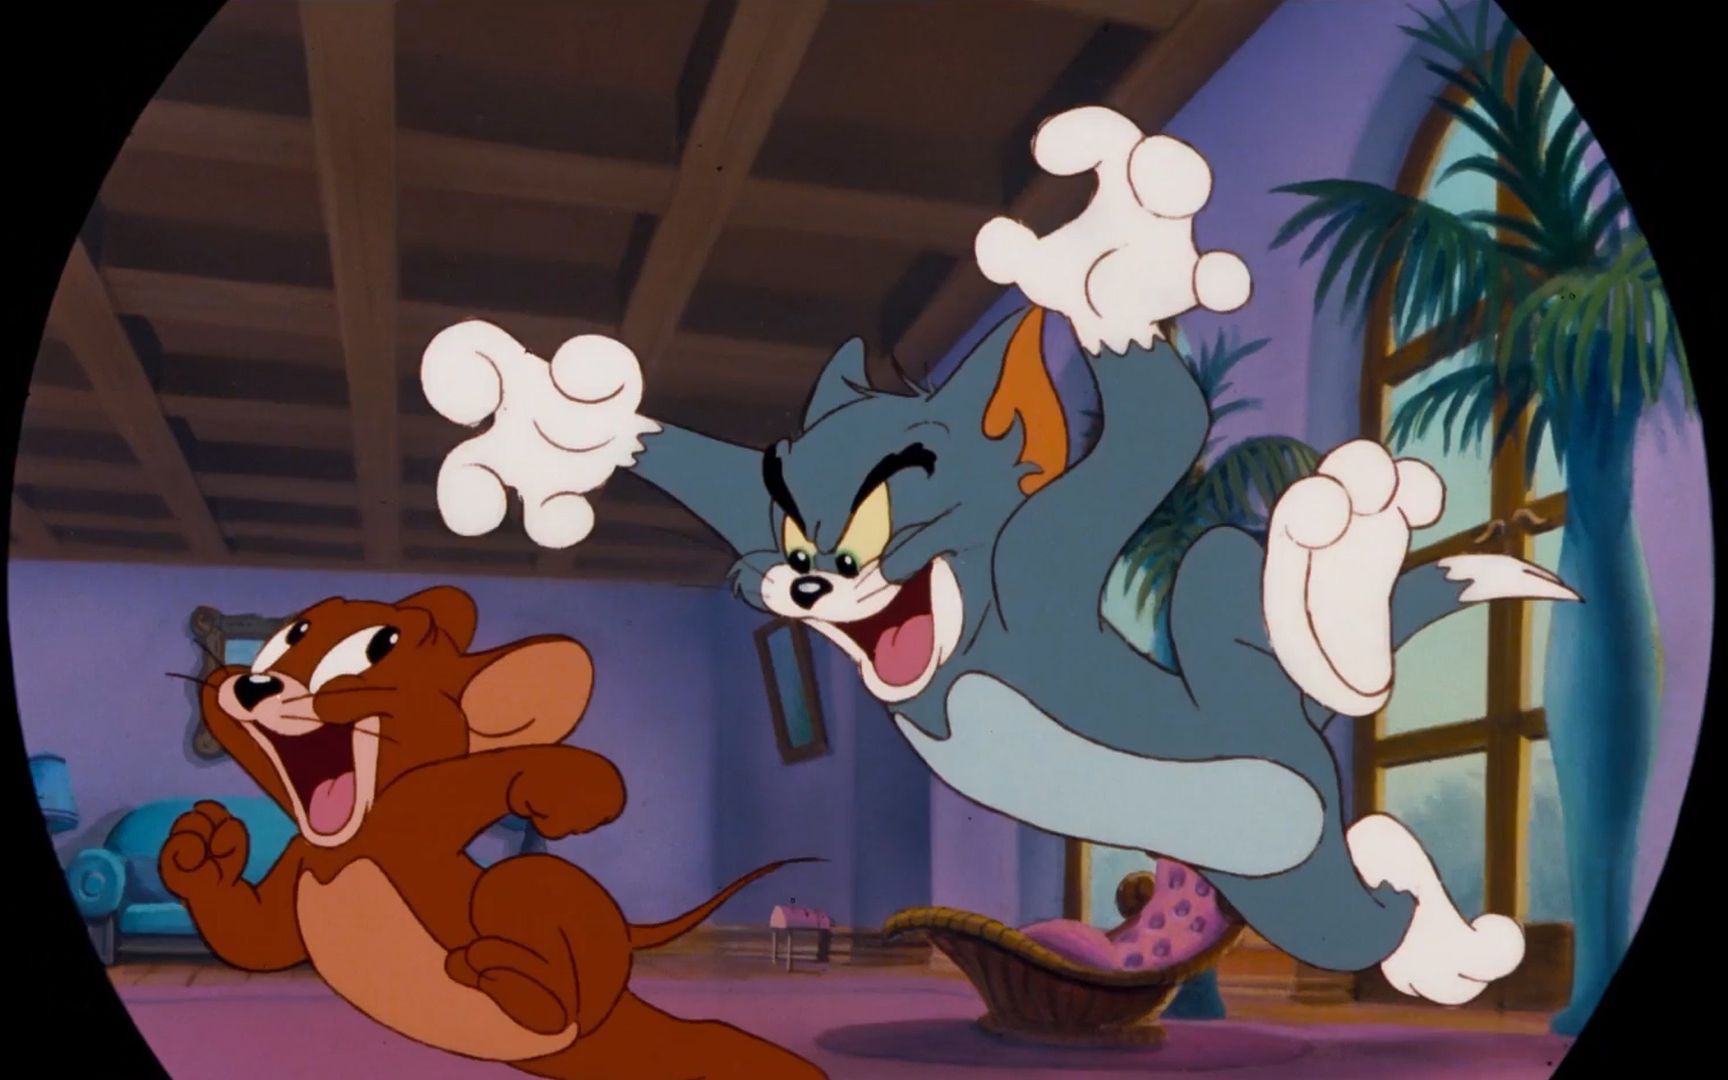 【ng】来介绍一部猫咪老鼠谈恋爱的经典动画《猫和老鼠1992电影版 tom